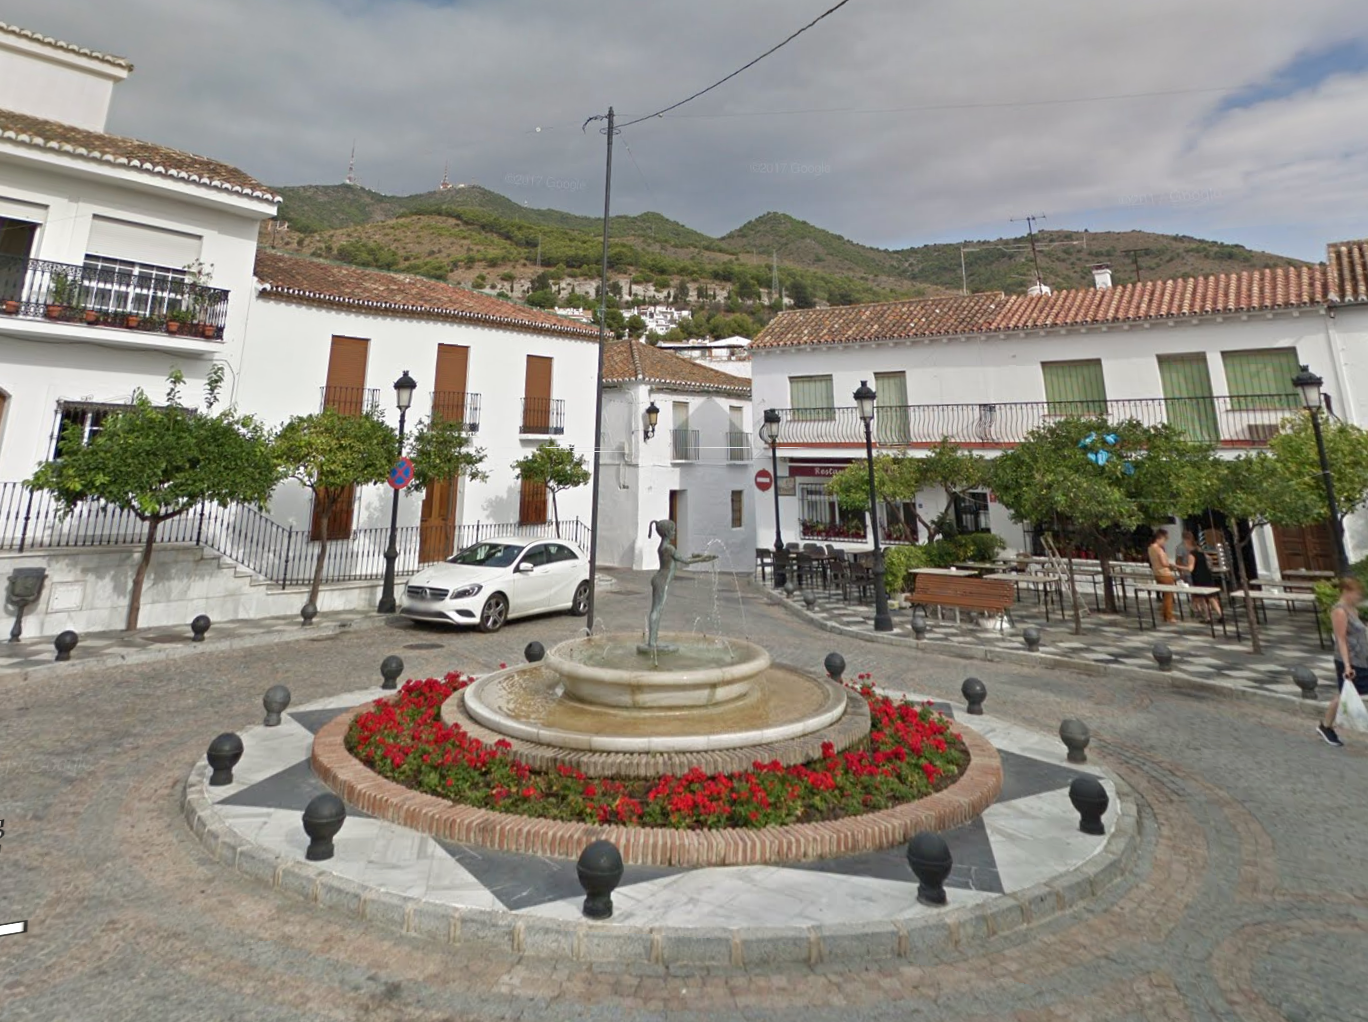 Plaza de España by Google Earth